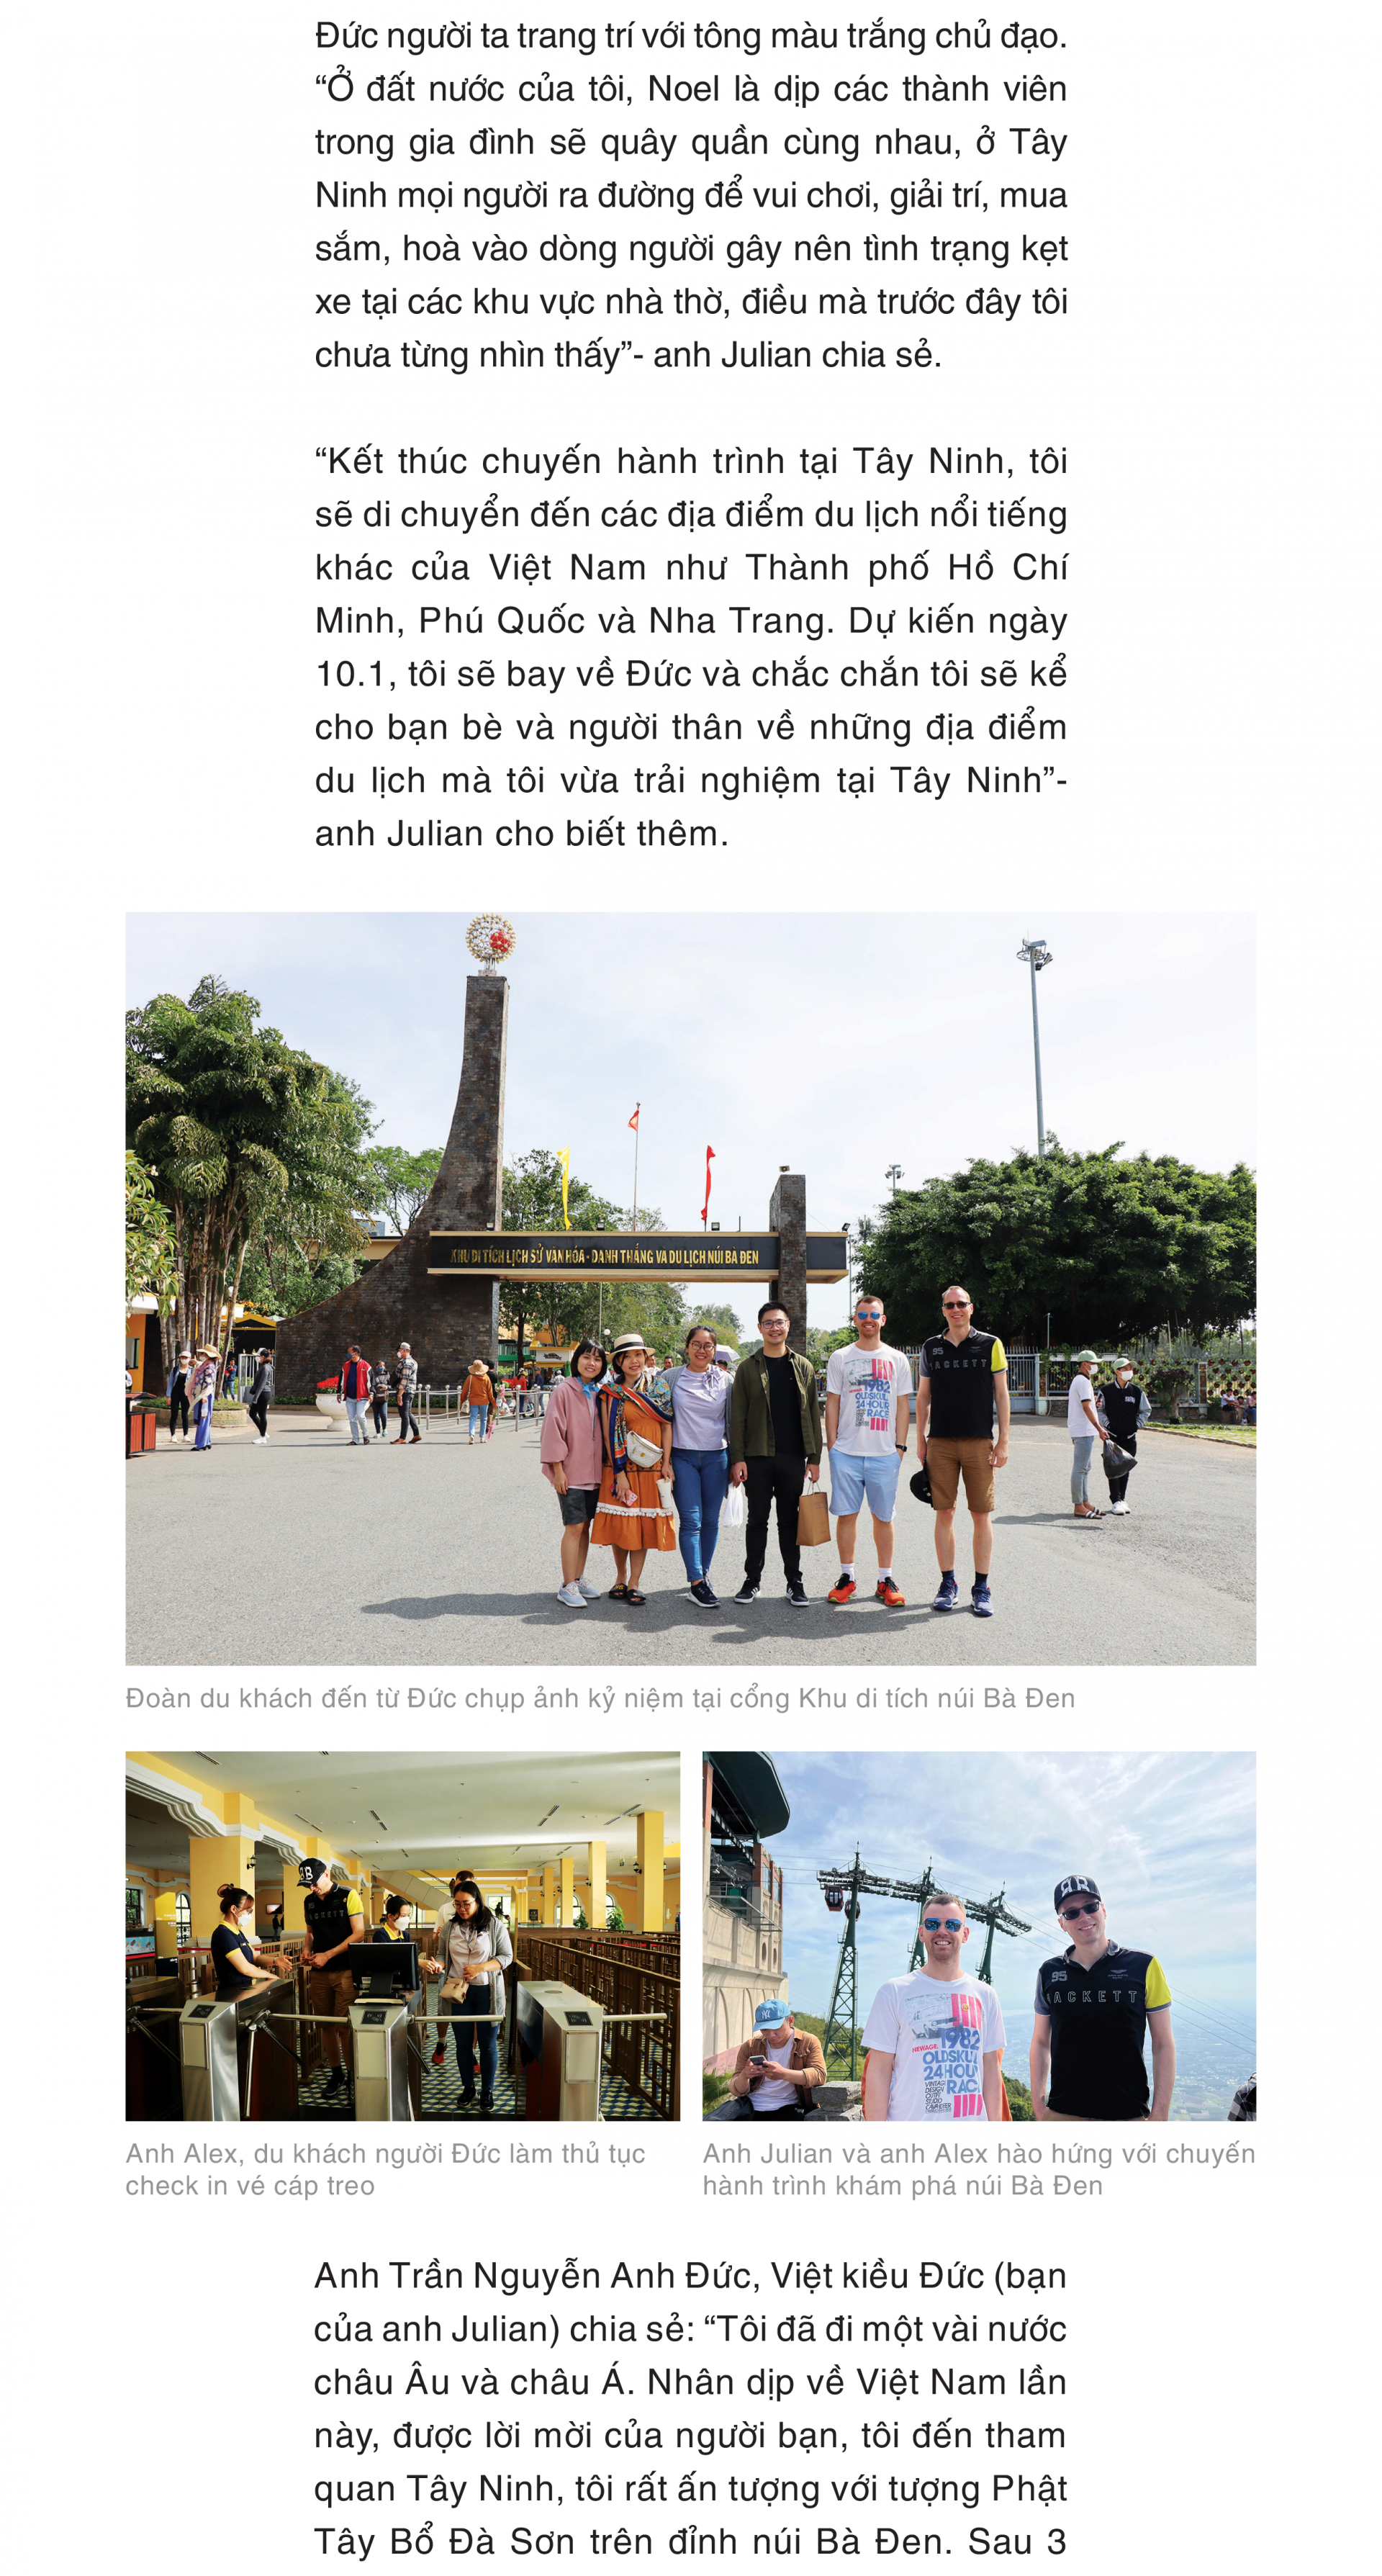 Du lịch Tây Ninh - góc nhìn của du khách quốc tế